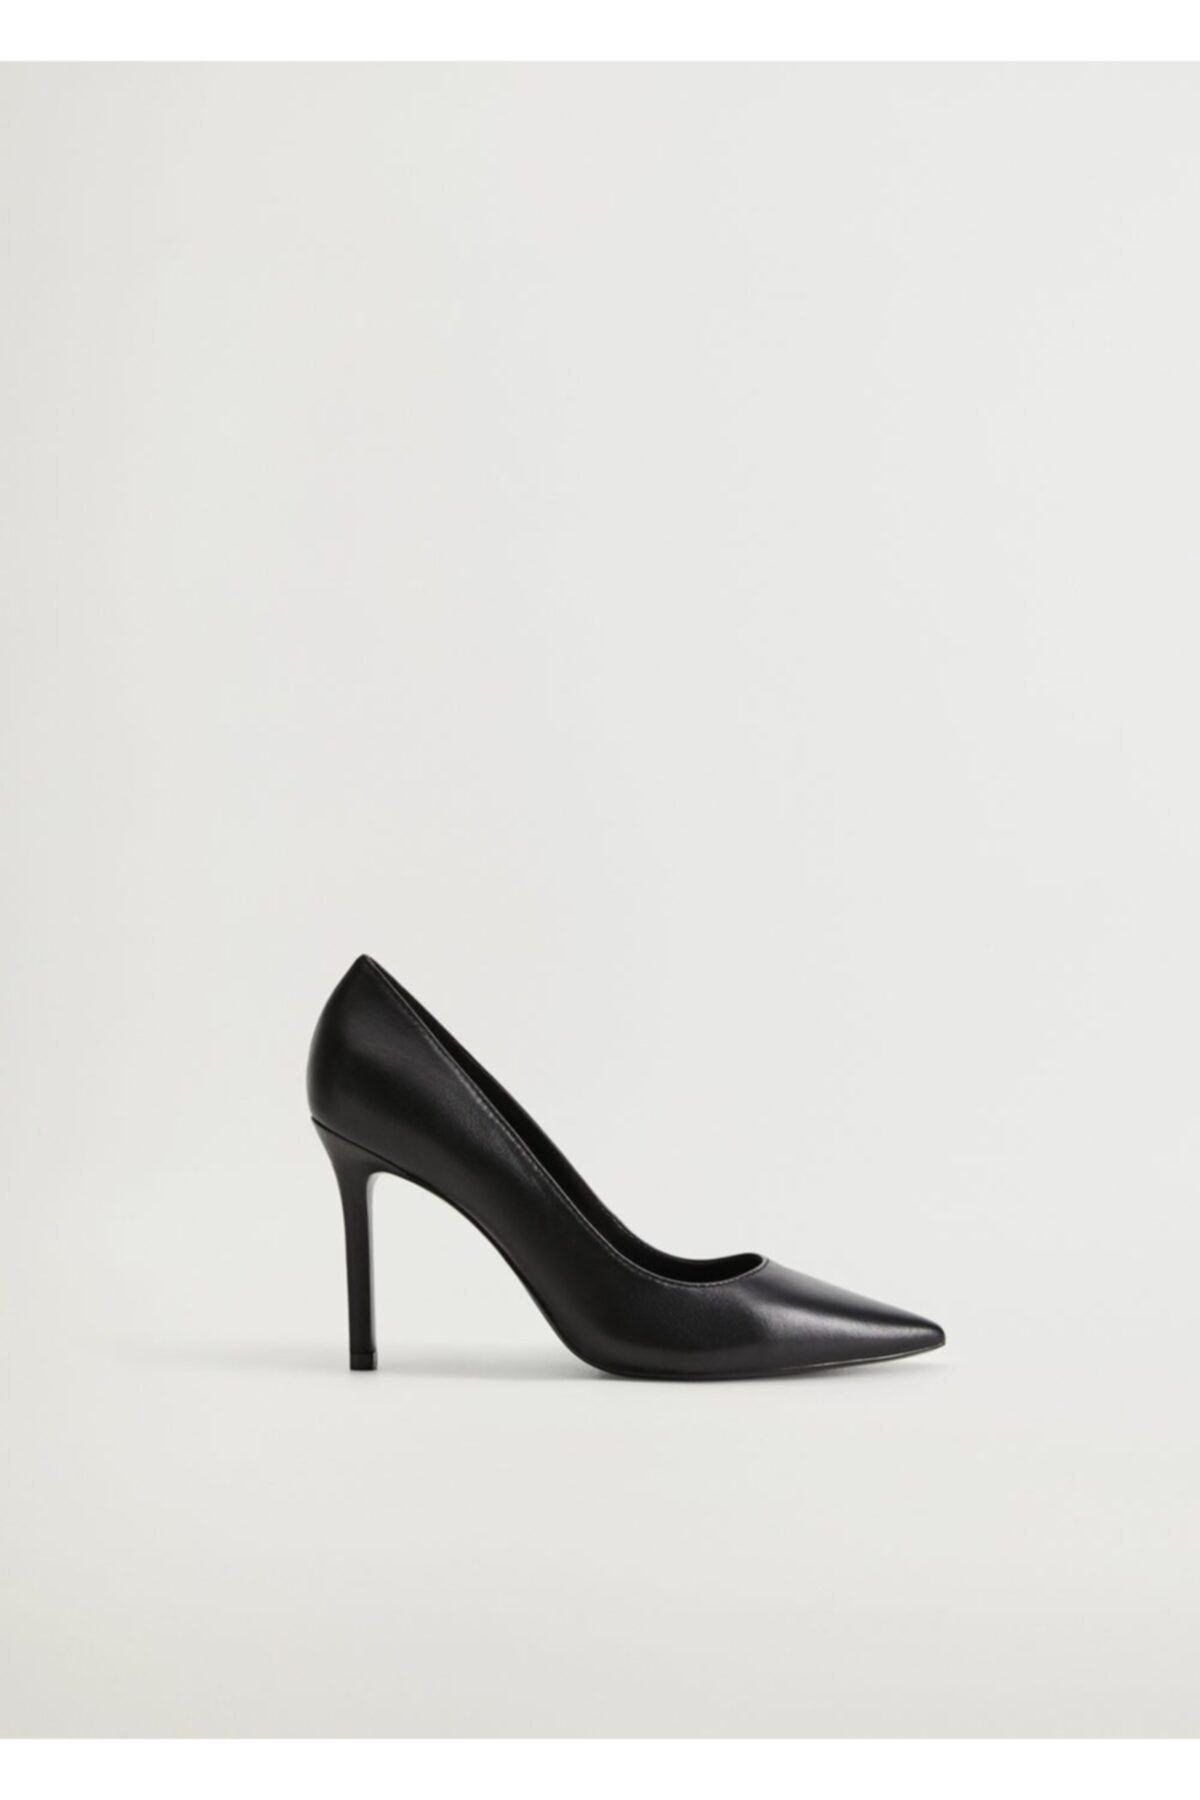 MANGO Kadın Siyah Stiletto Topuklu Ayakkabı 77032891